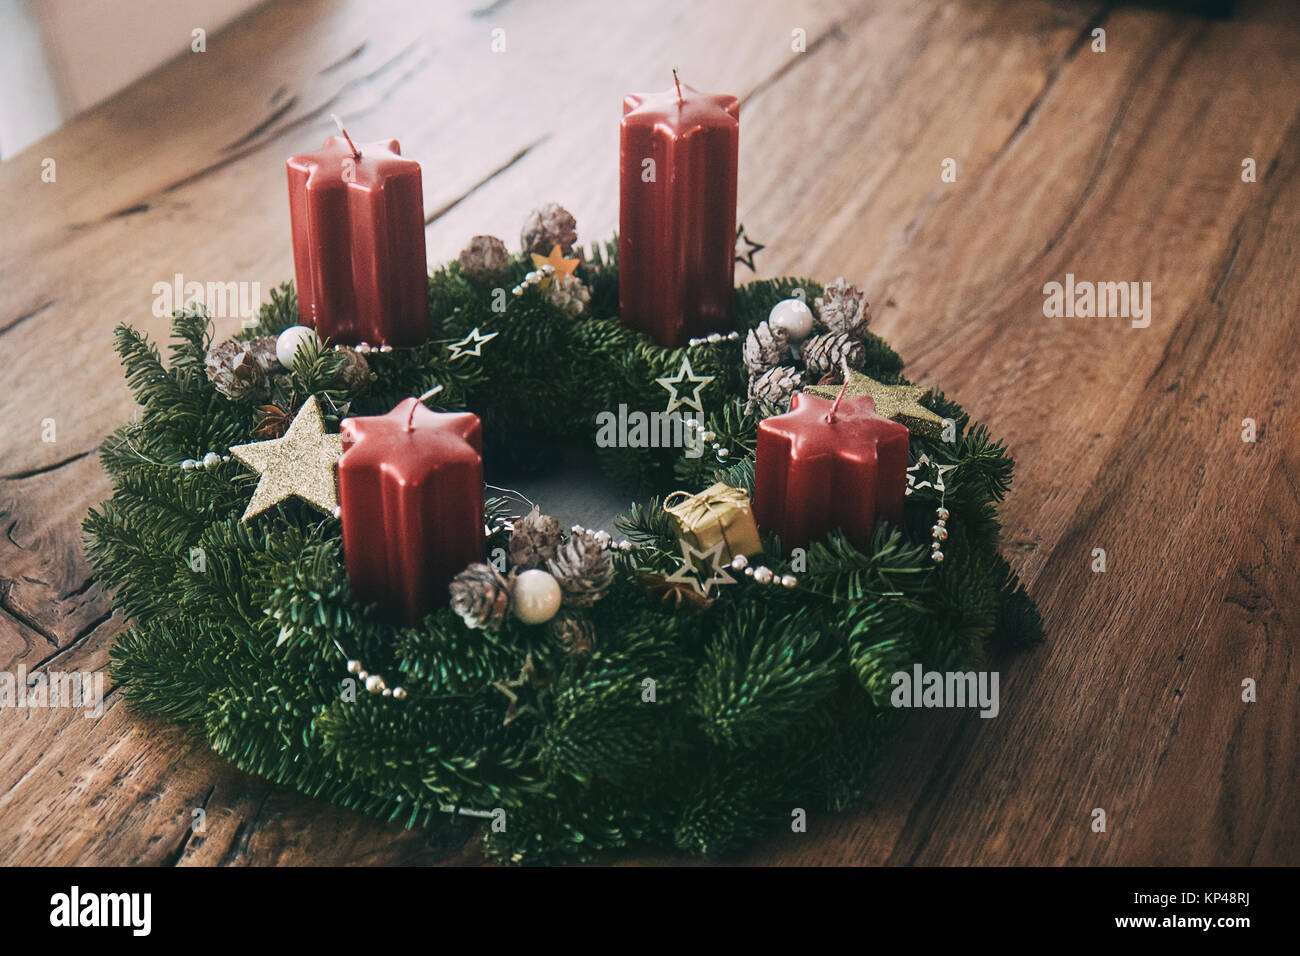 Weihnachten Adventskranz im natürlichen Look mit vier Kerzen traditionelle  in der Schweiz Stockfotografie - Alamy